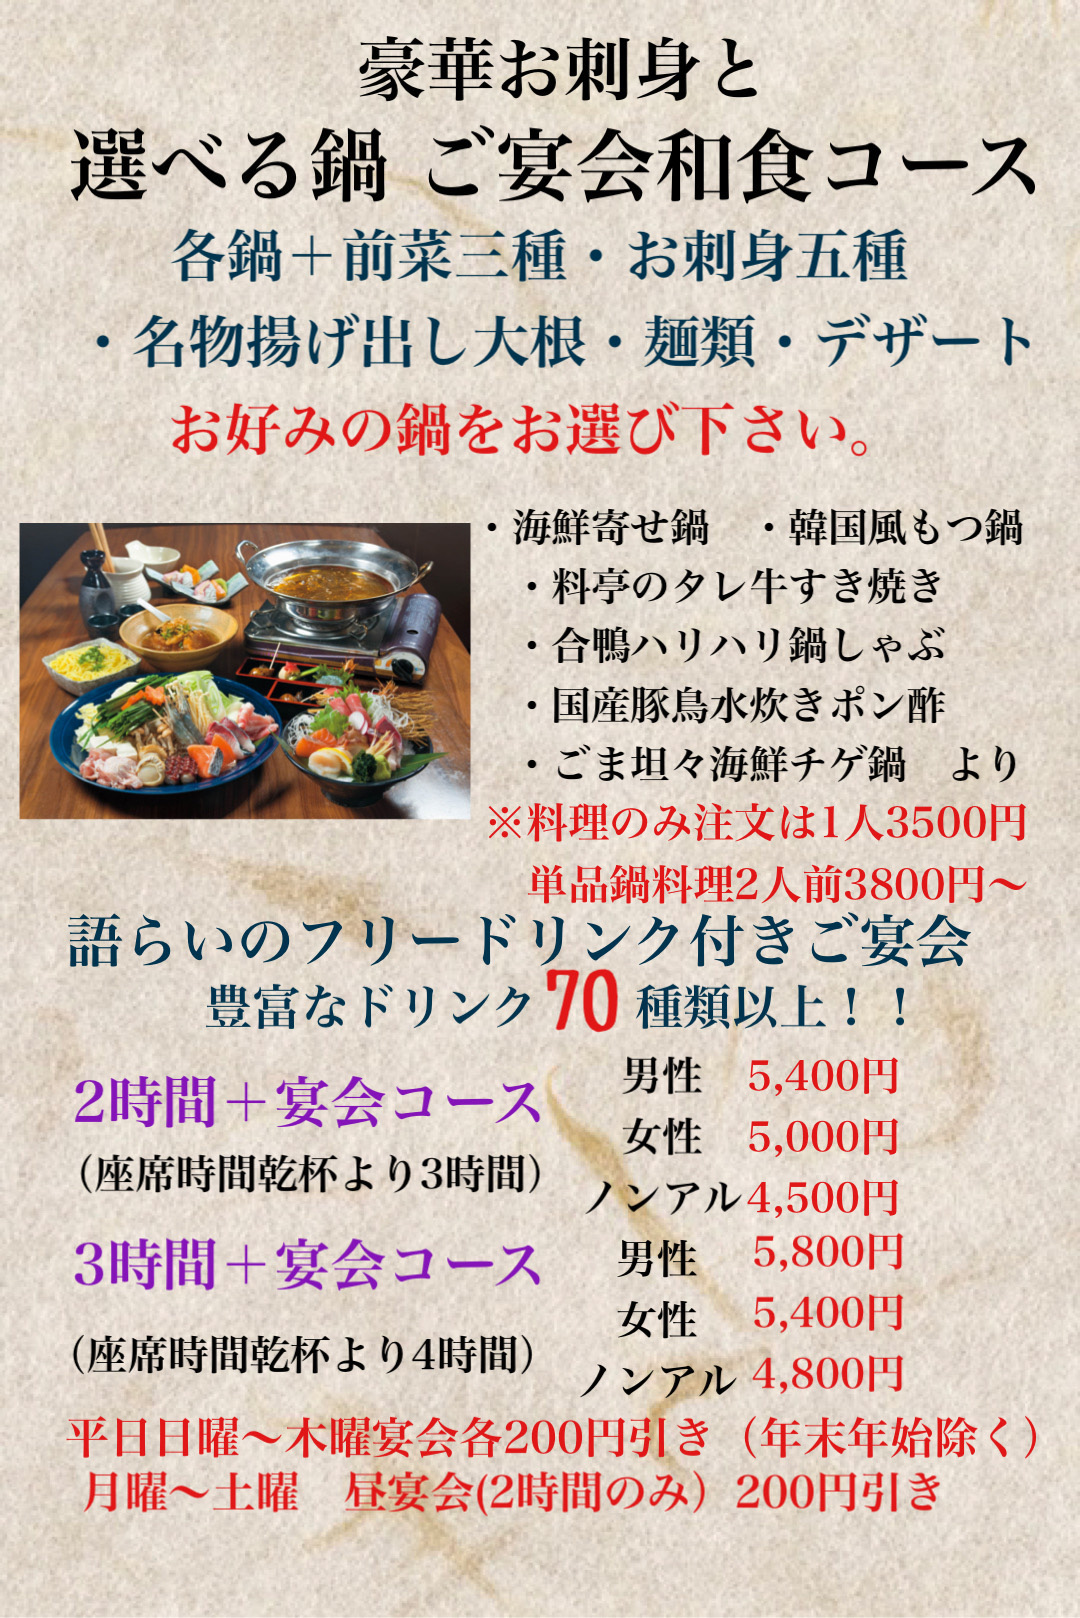 豪華お刺身と選べる鍋ご宴会和食コース